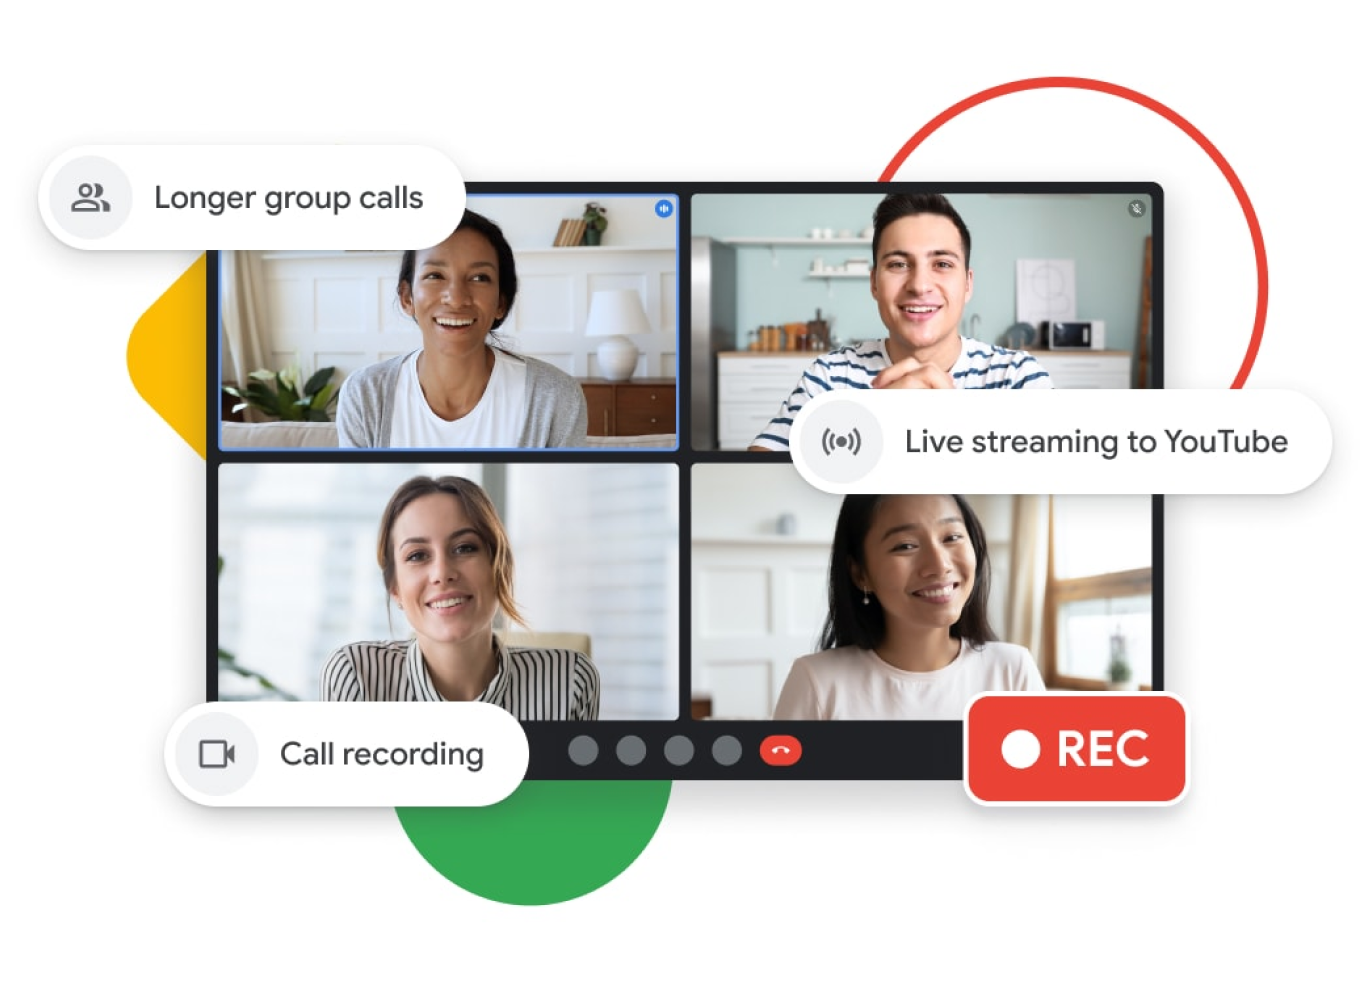 Daha uzun grup görüşmeleri, YouTube'da canlı yayınlama ve aramayı kaydetme özellikleri sunan bir Google Meet görüşmesinin resmi